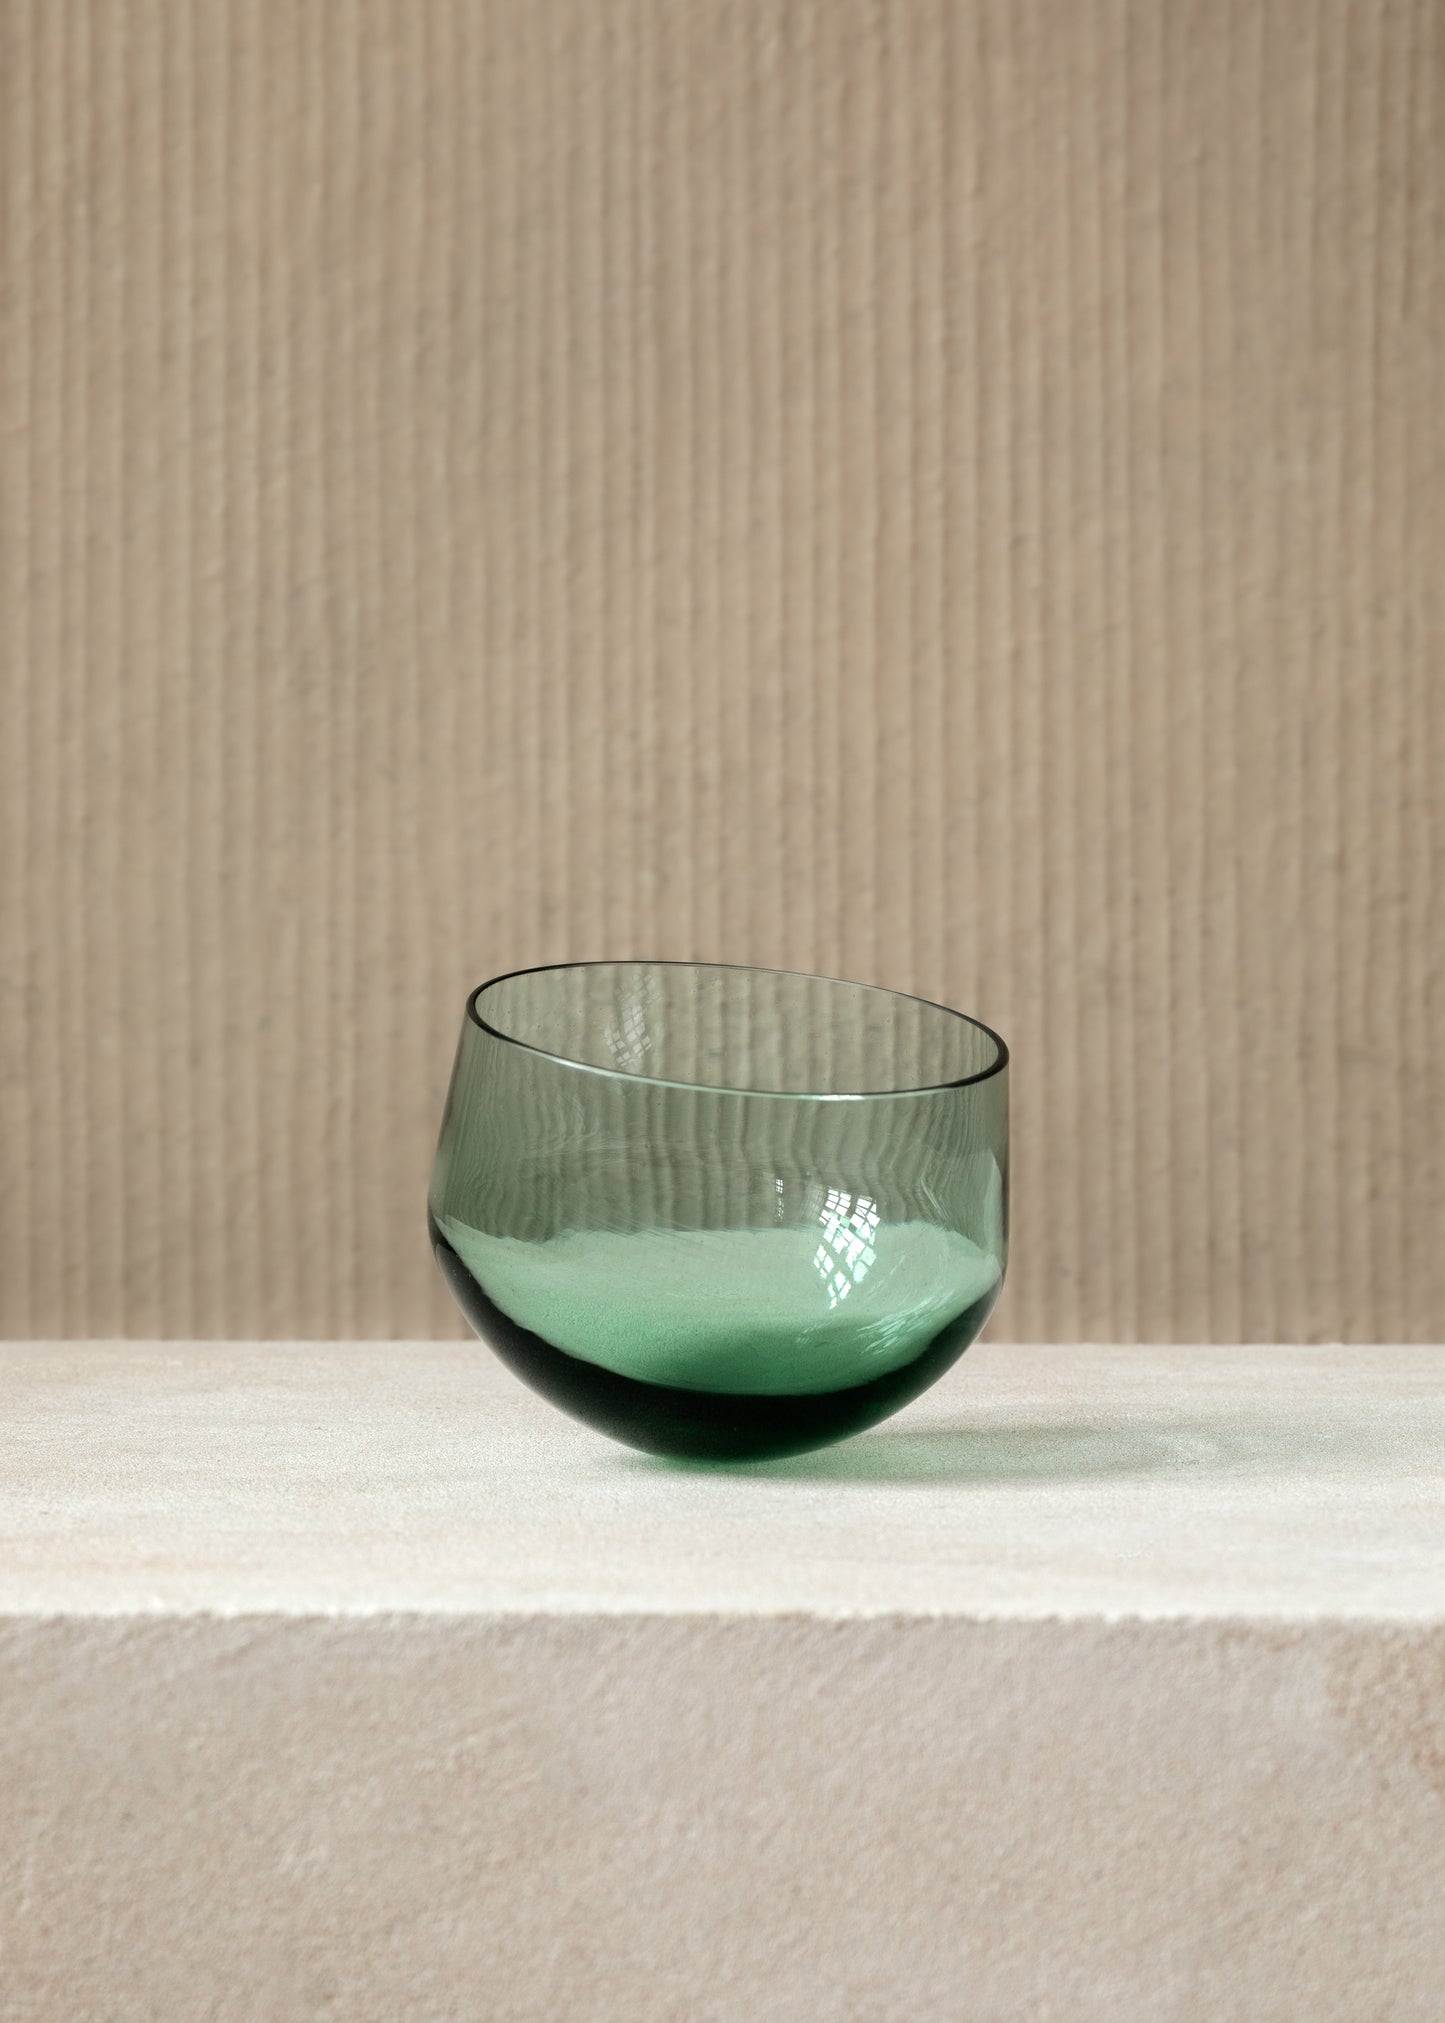 Henrieke Neumeyer "ATTENZIONE Drinking Glass"